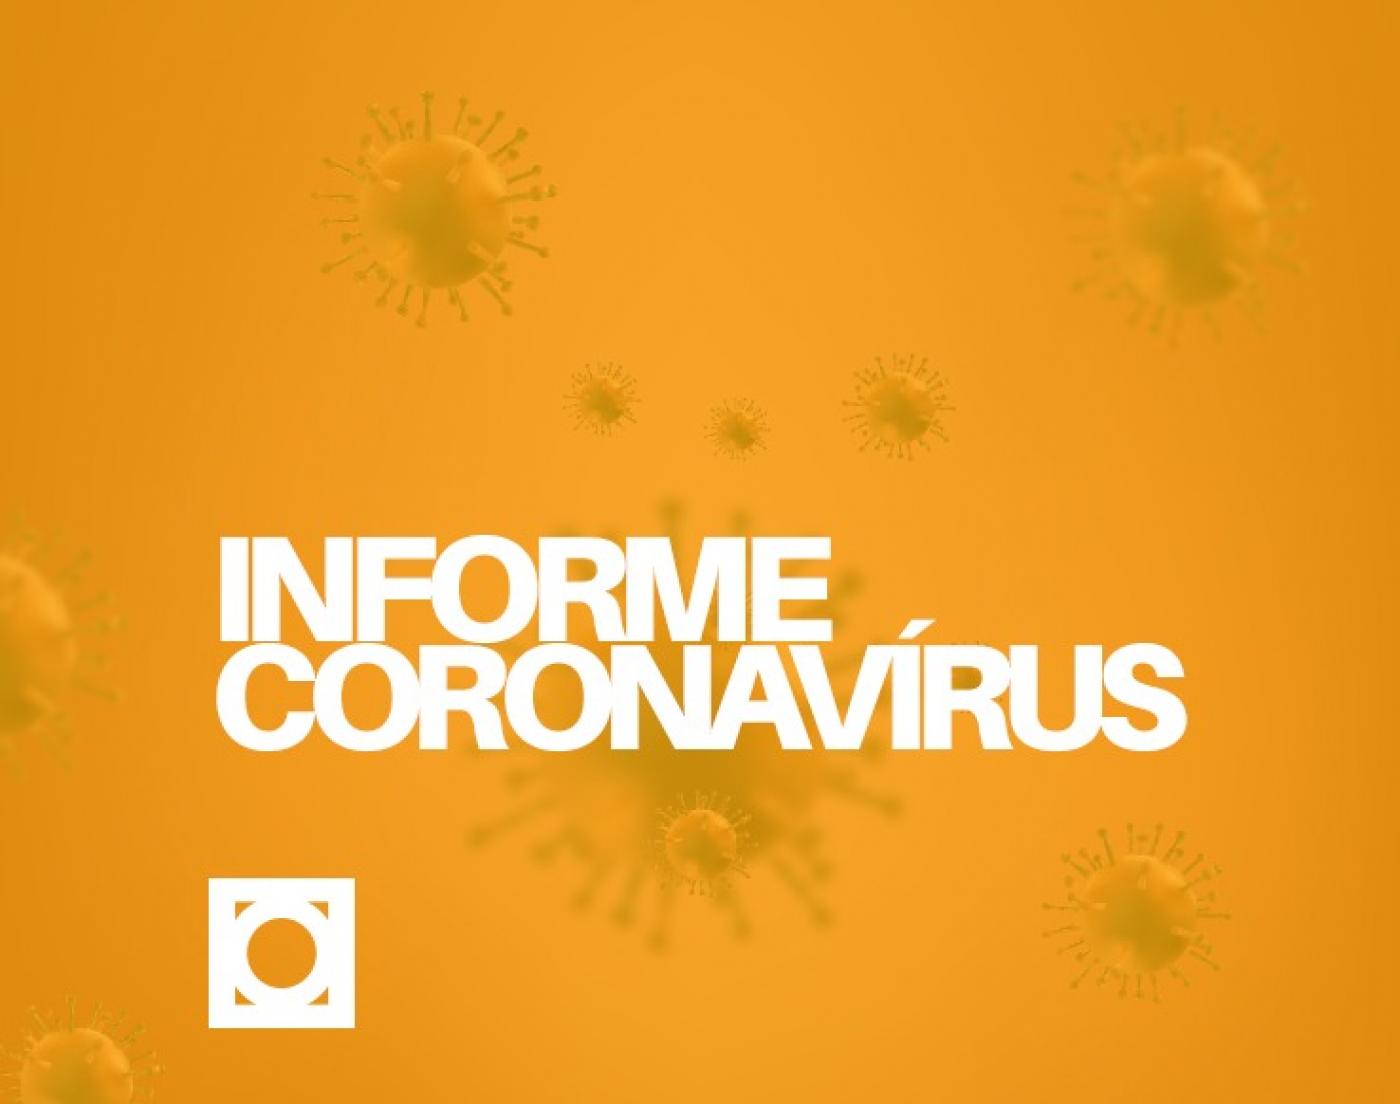 arte com informe coronavirus #paratodosverem